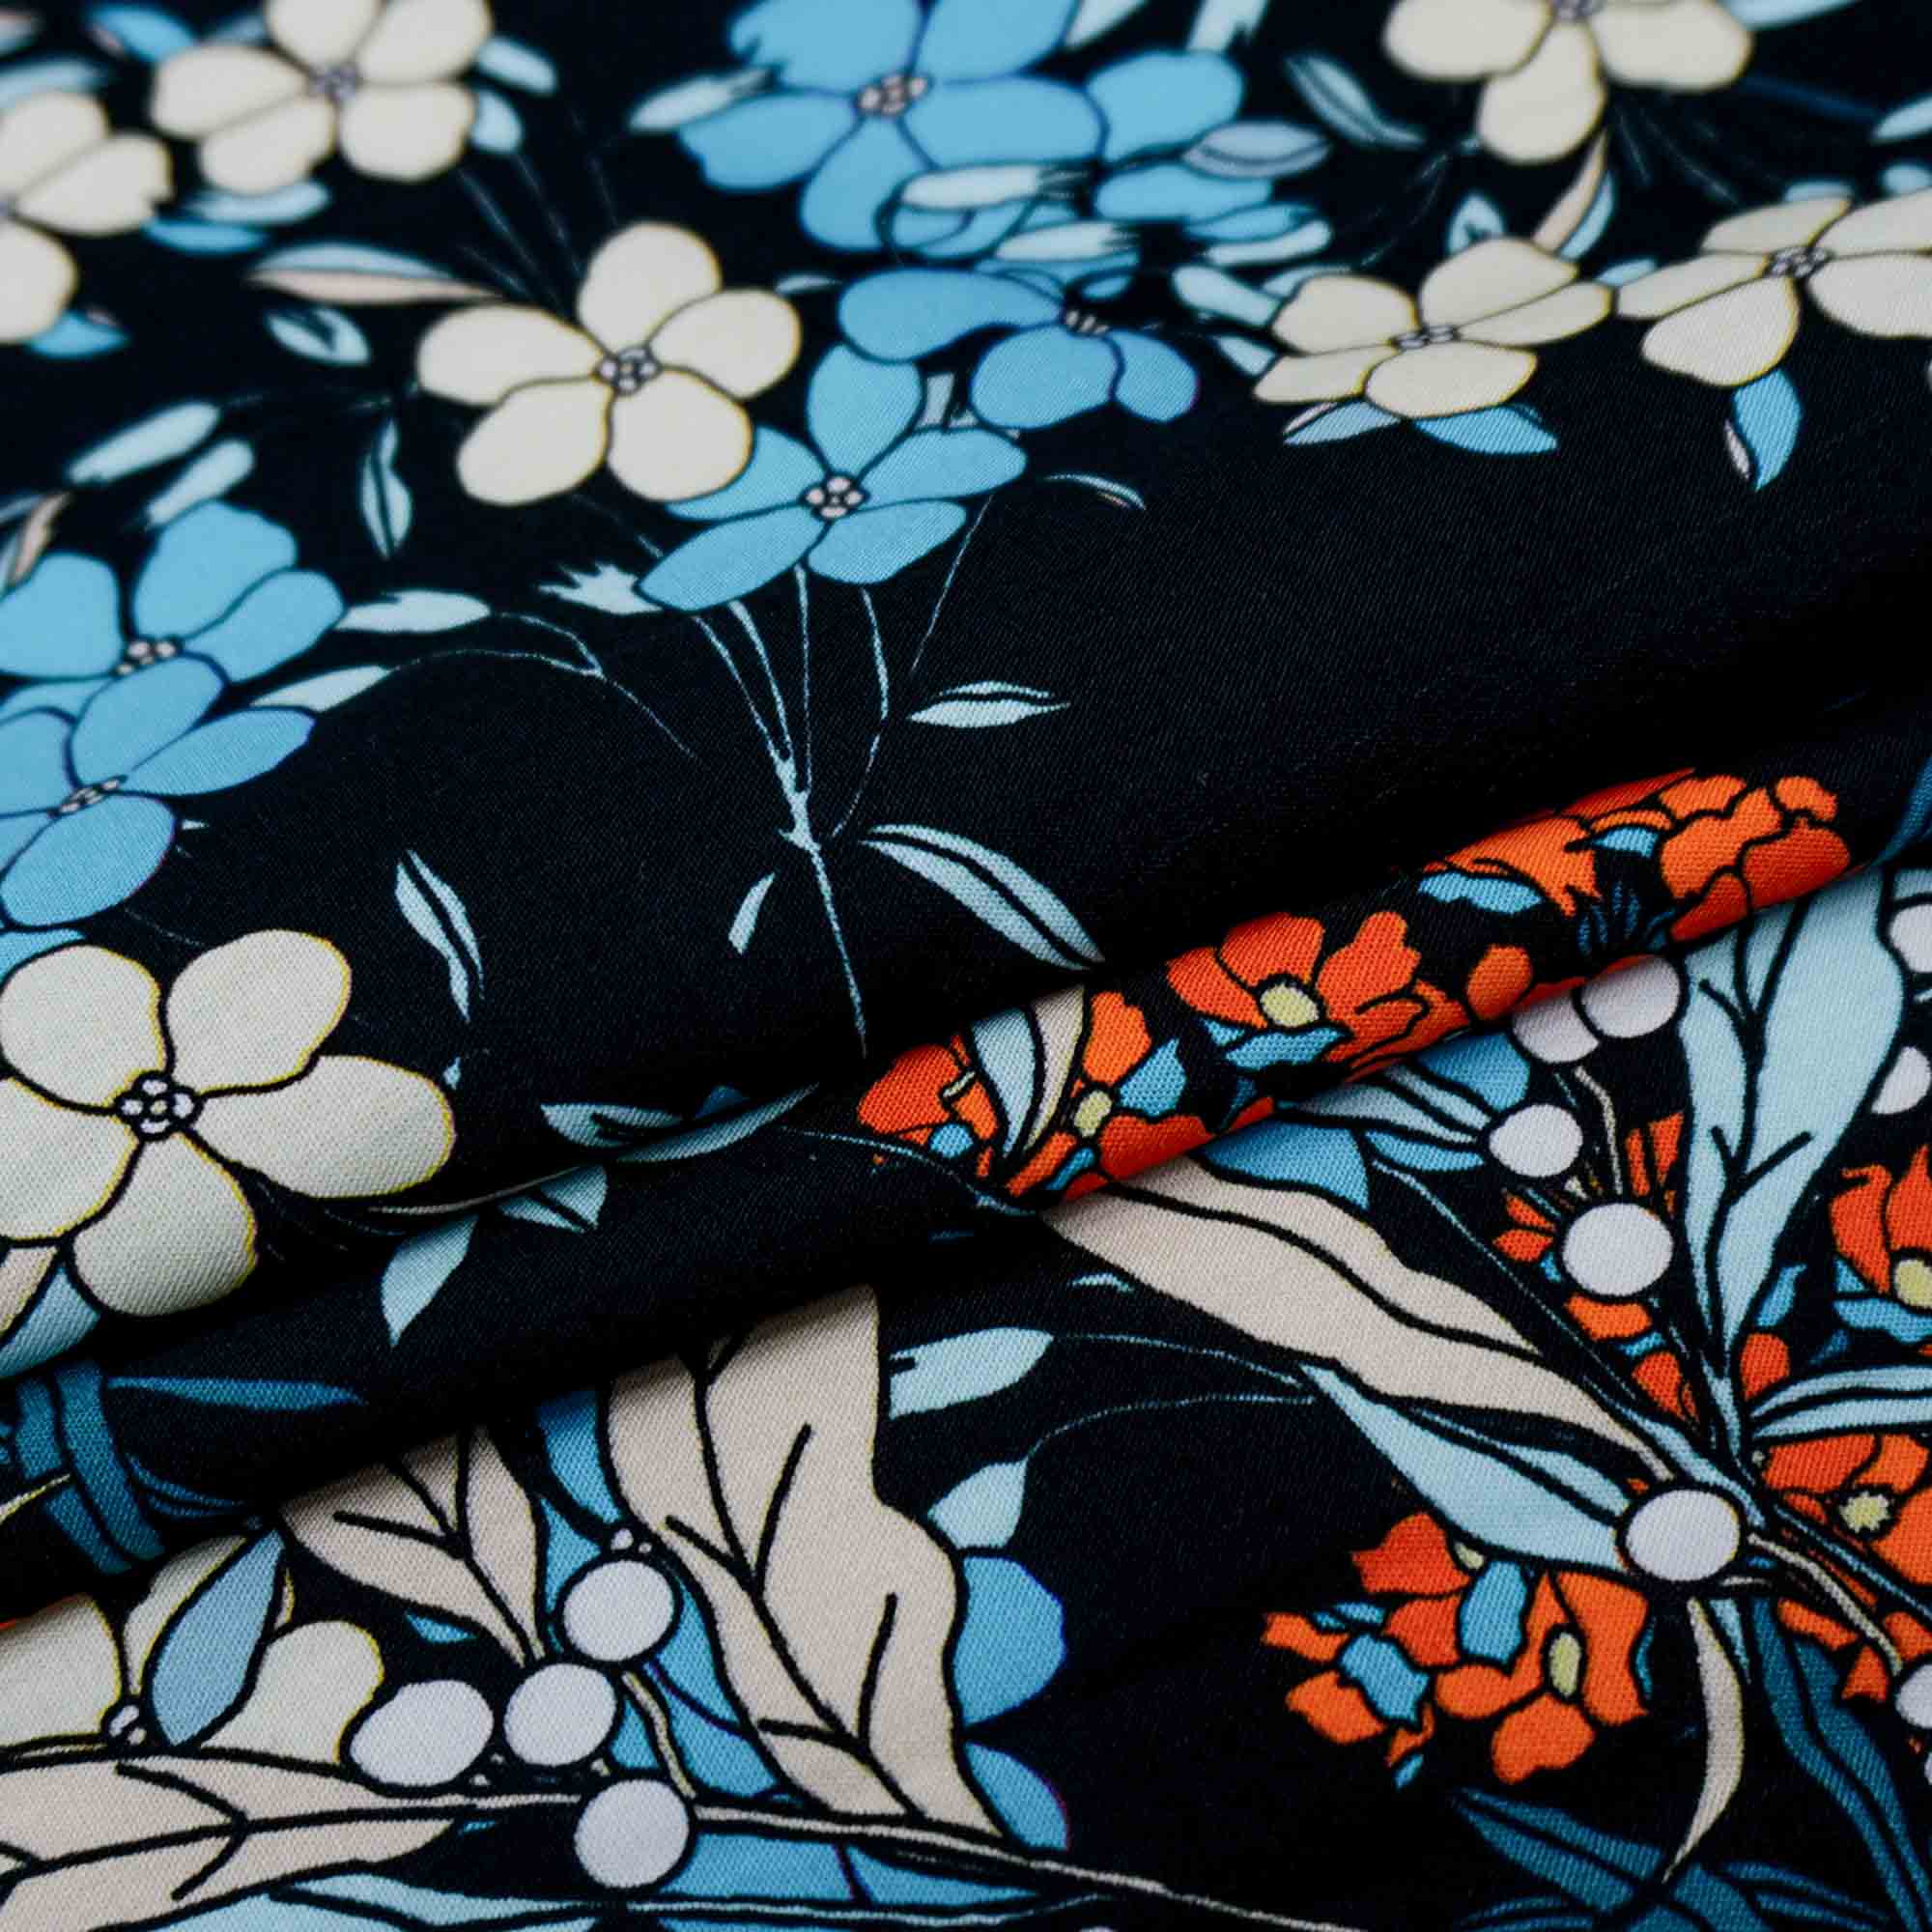 Tecido viscose preto estampado floral (tecido italiano legítimo)